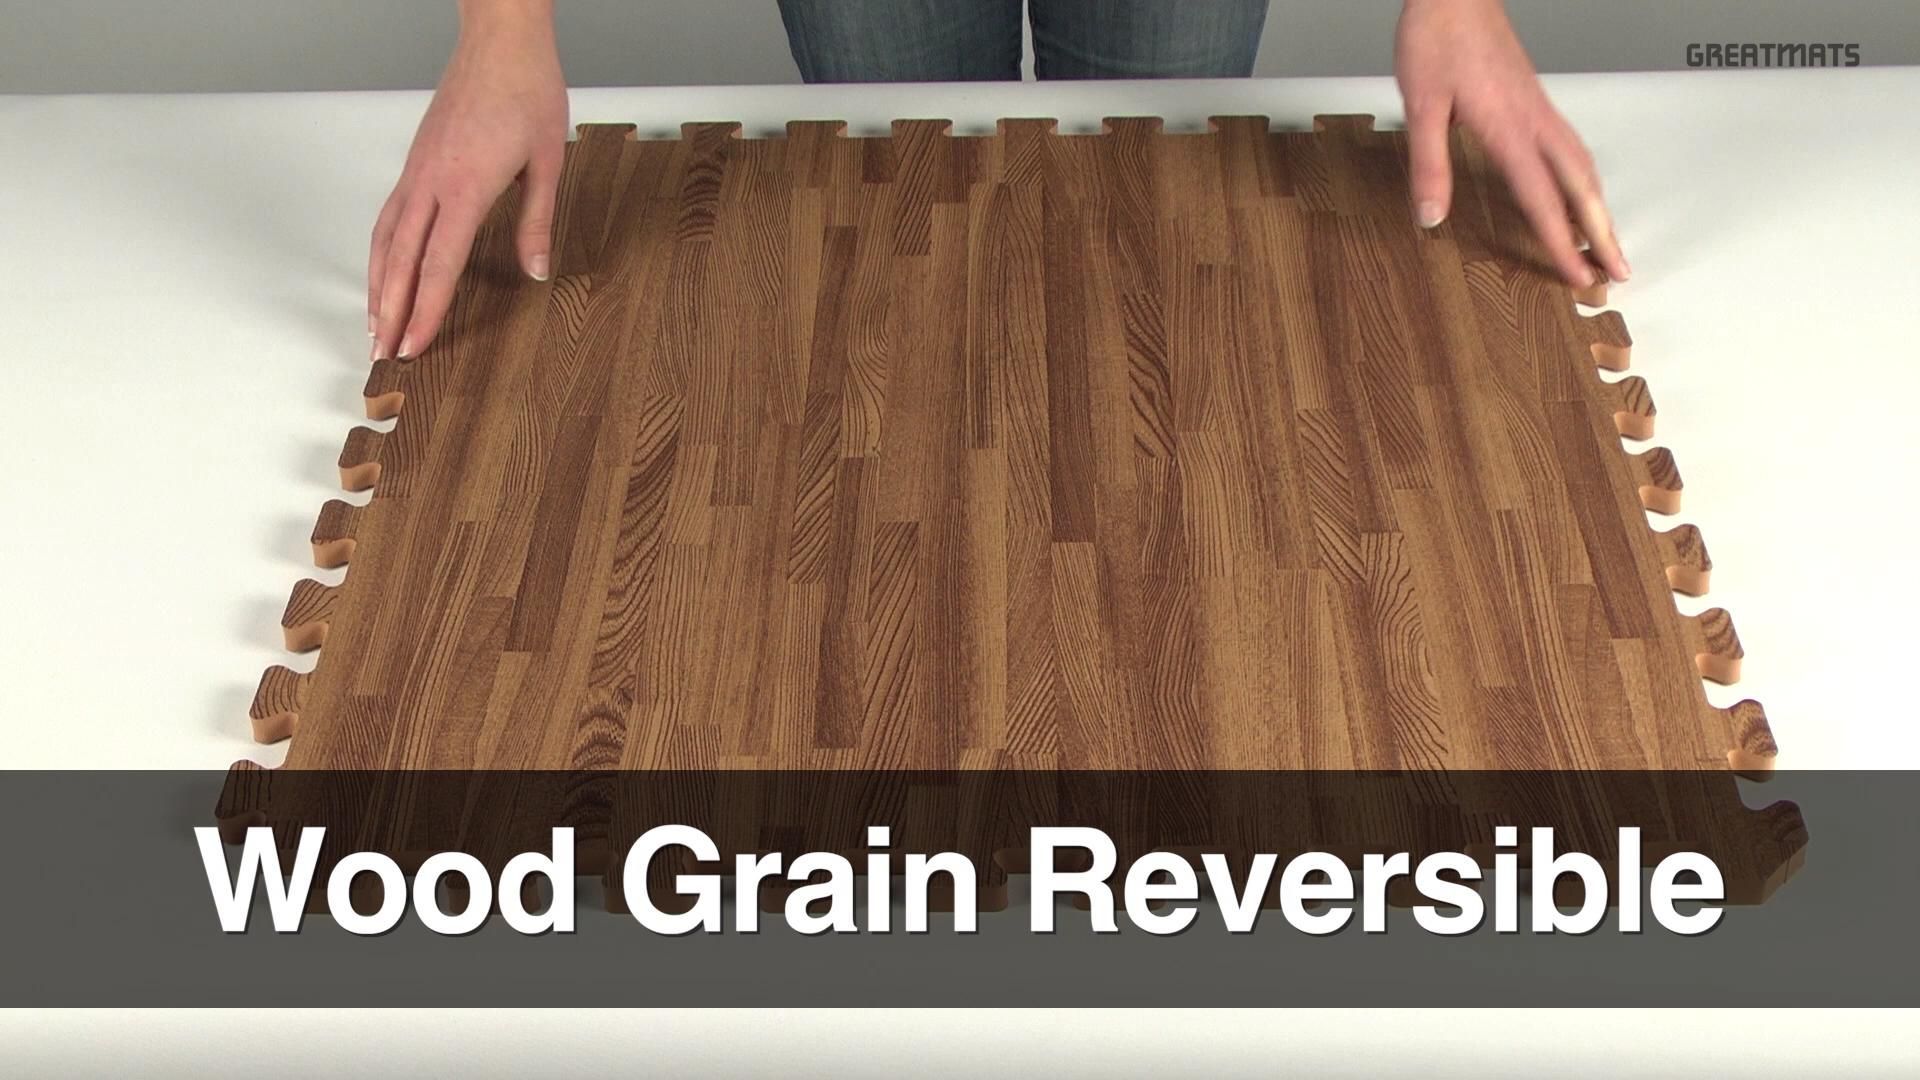 Wood Grain Foam Tiles Reversible - Wood Grain Foam Tiles Reversible -   19 diy Outdoor flooring ideas